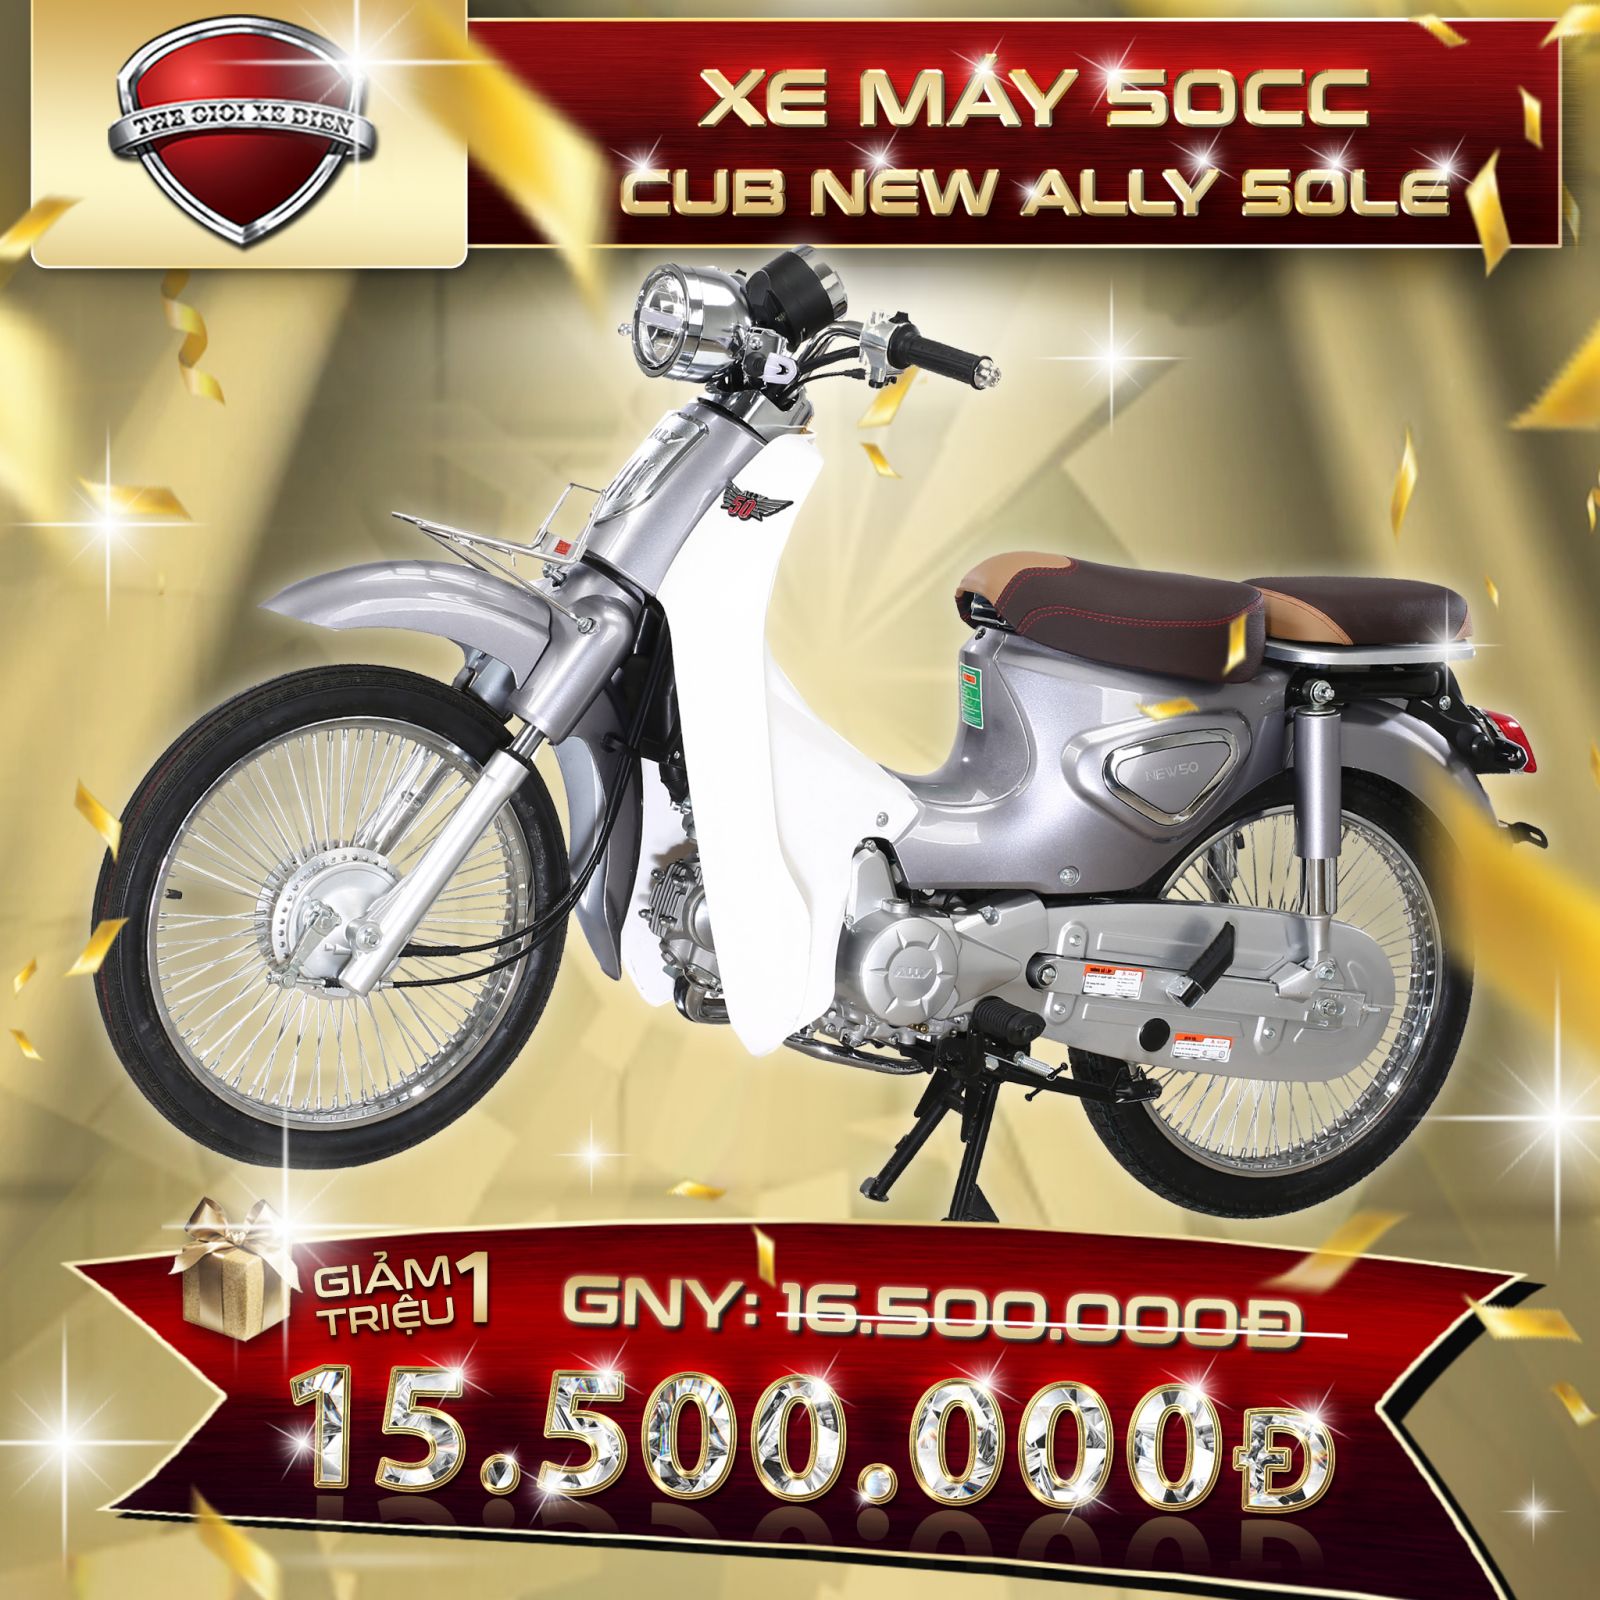 Xe máy 50cc CUb new Ally